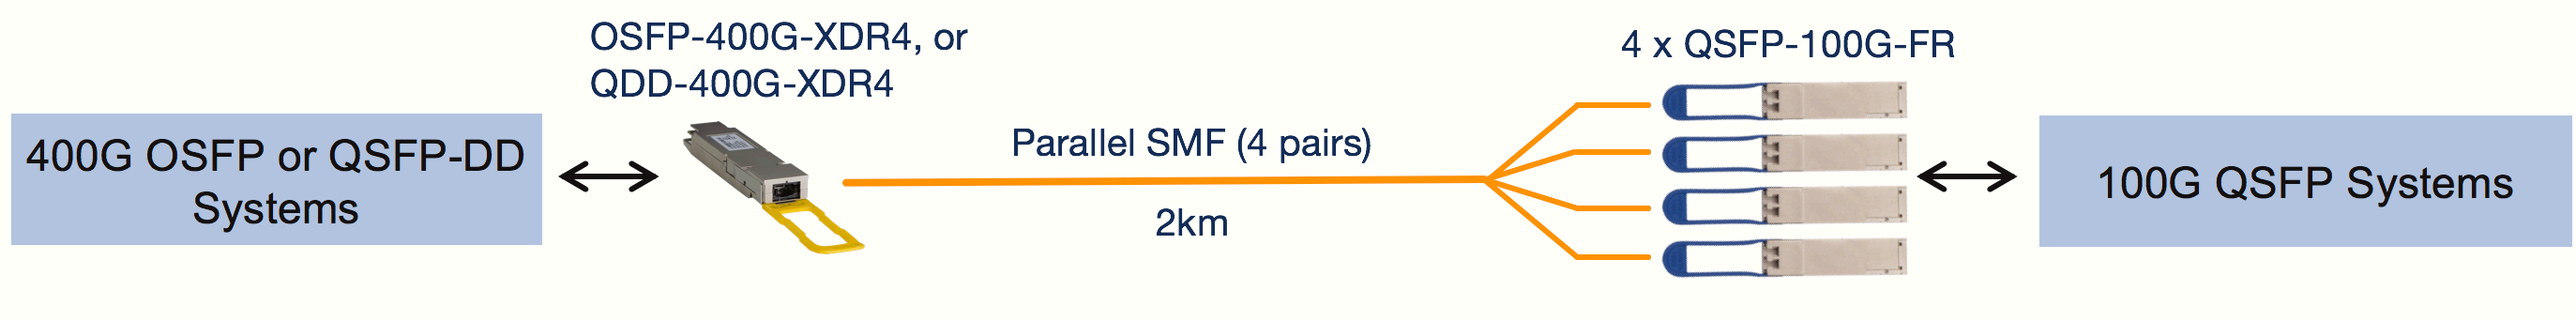 OSFP-400G-XDR4 (または QDD-400G-XDR4) から 4 x QSFP-100G-FR (2km SMF 経由)